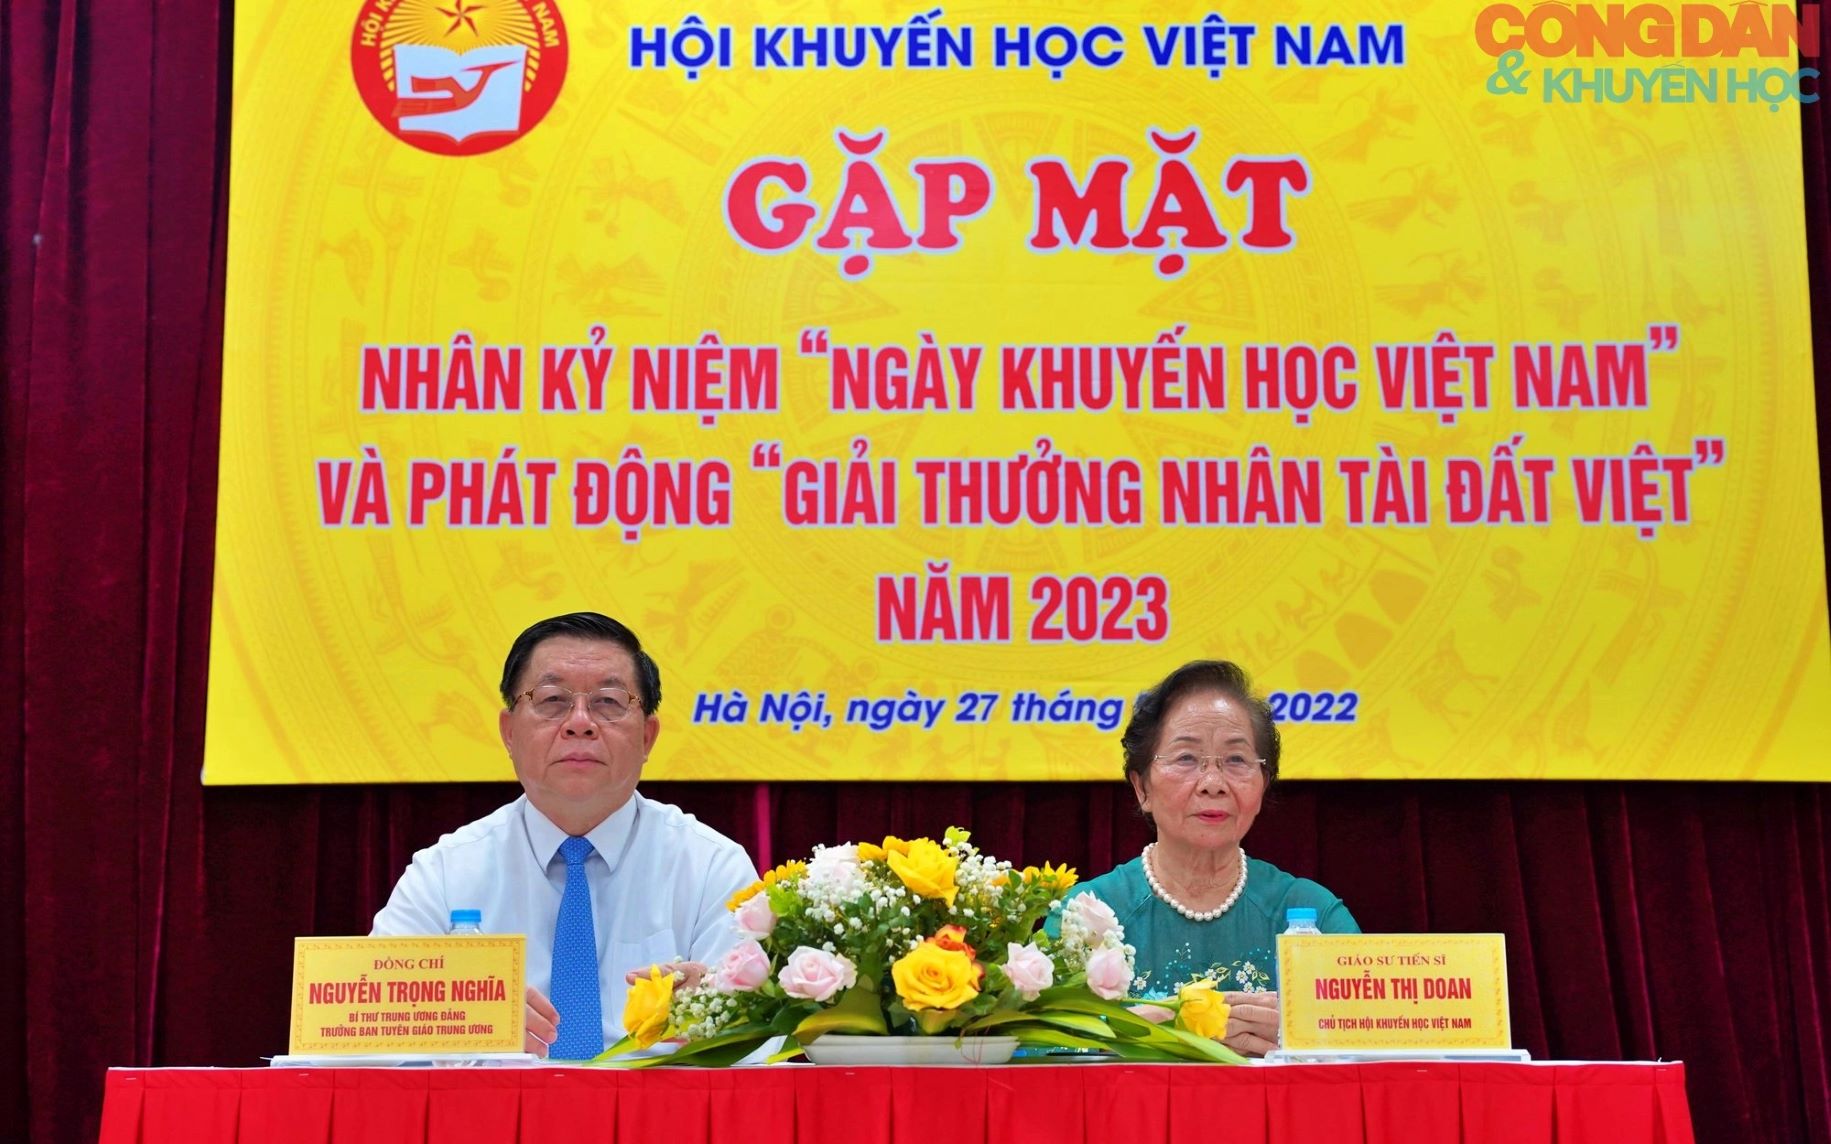 Gặp mặt nhân 'Ngày Khuyến học Việt Nam' và phát động 'Giải thưởng Nhân tài Đất Việt' năm 2023